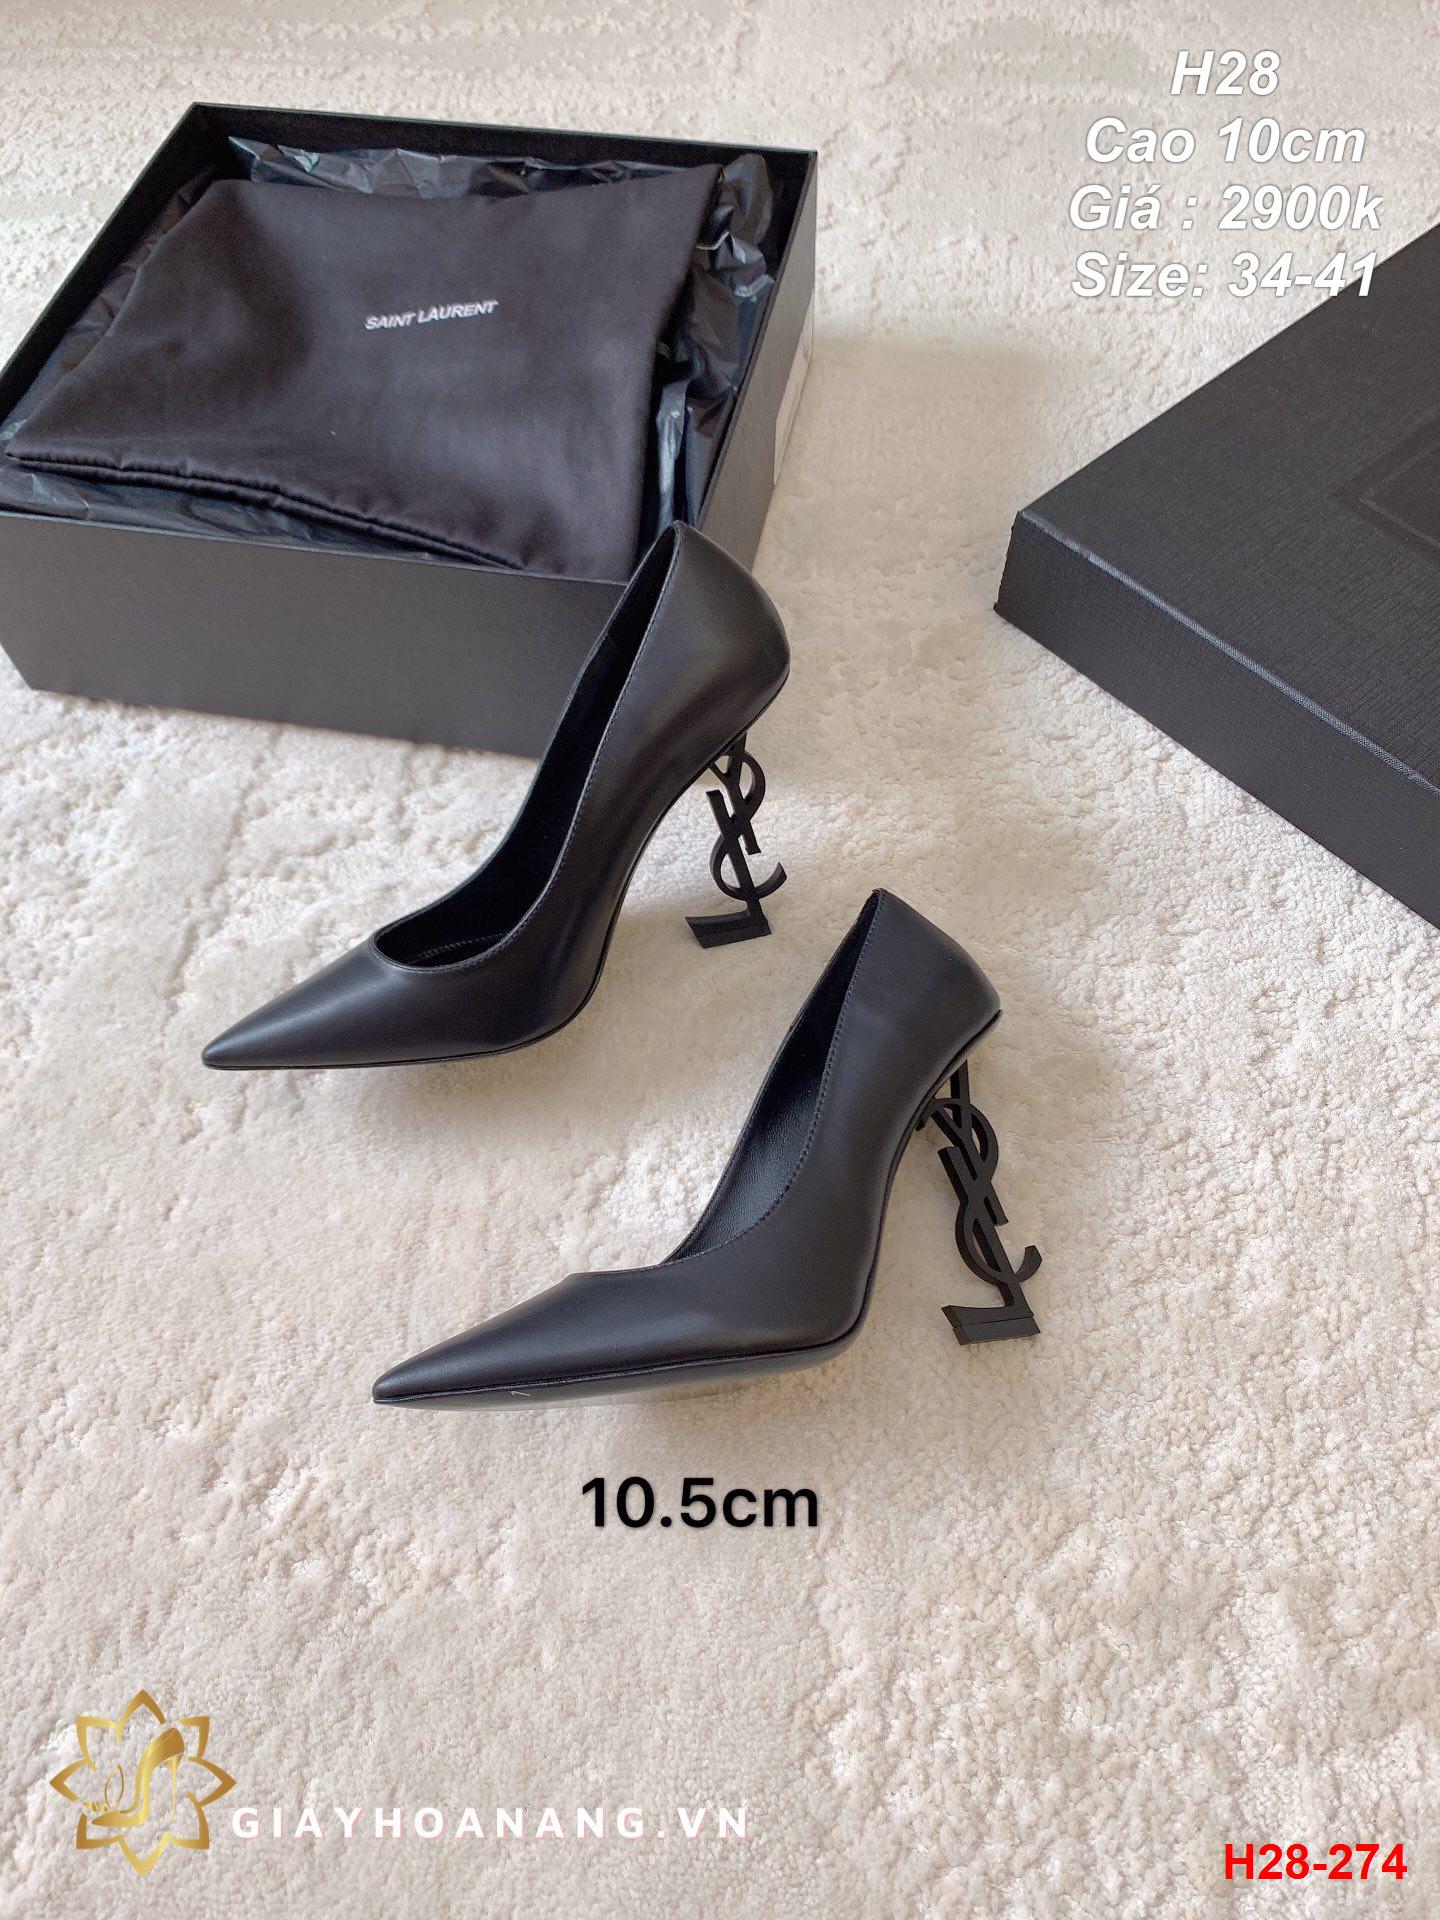 H28-274 Saint Laurent giày cao 10cm siêu cấp